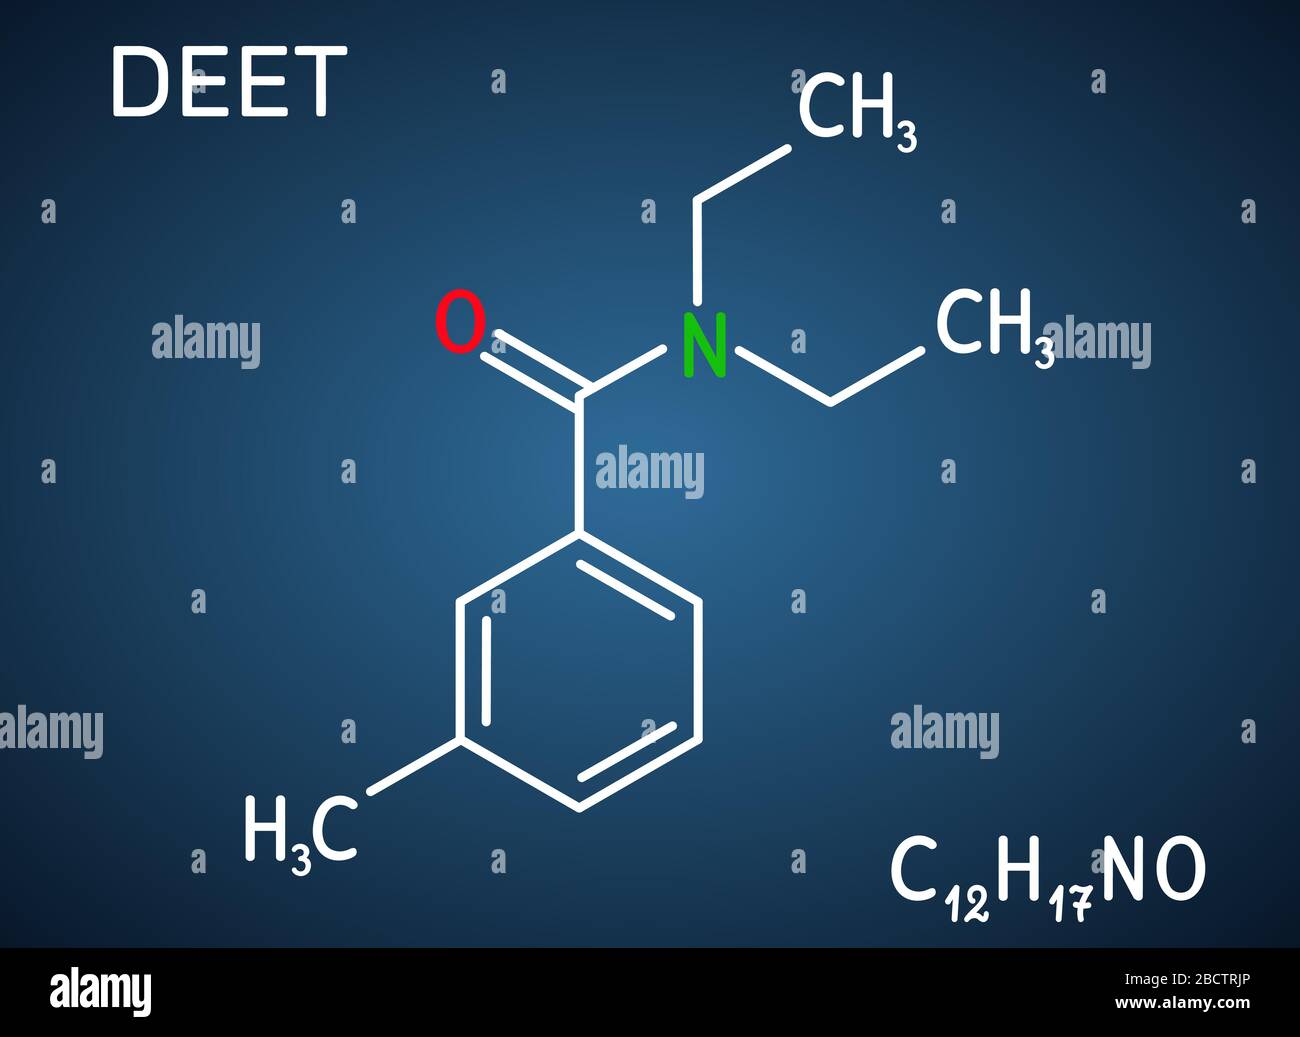 DEET, Diethyltoluamid, N,N-Diethyl-Meta-Toluamid, C12H17NO-Molekül. Es ist Wirkstoff in Insektenschutzmitteln. Strukturelle chemische Formel auf der TH Stock Vektor